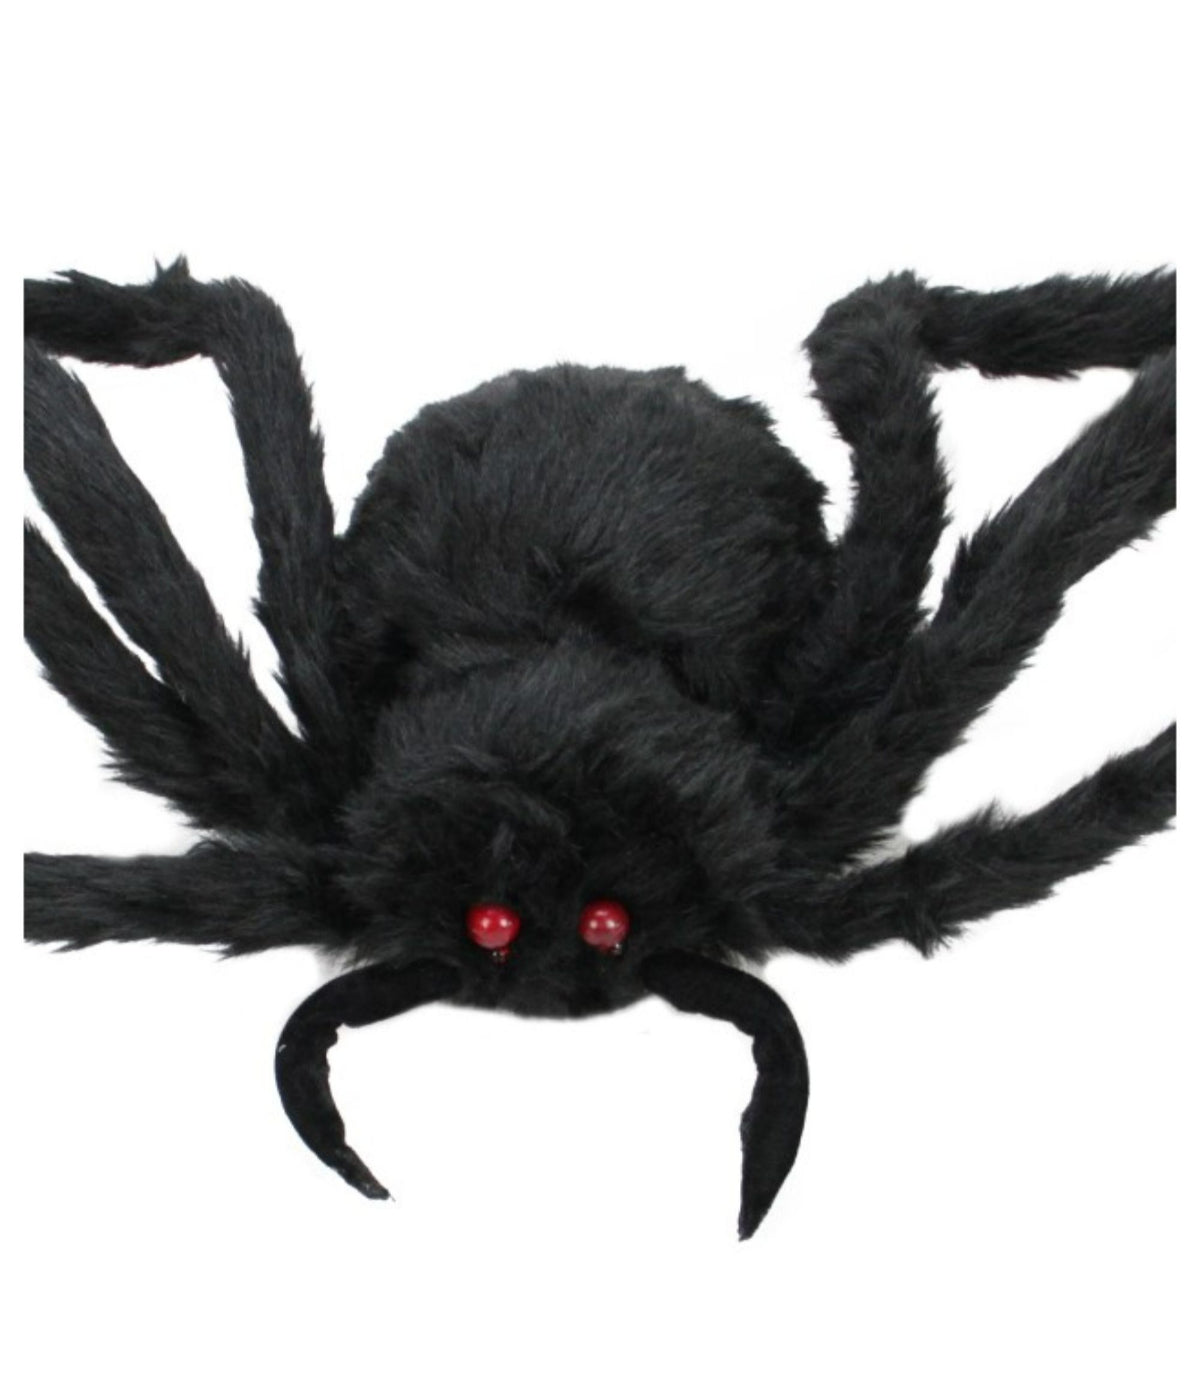 Black Spider with LED Flashing Eyes Halloween Decoration